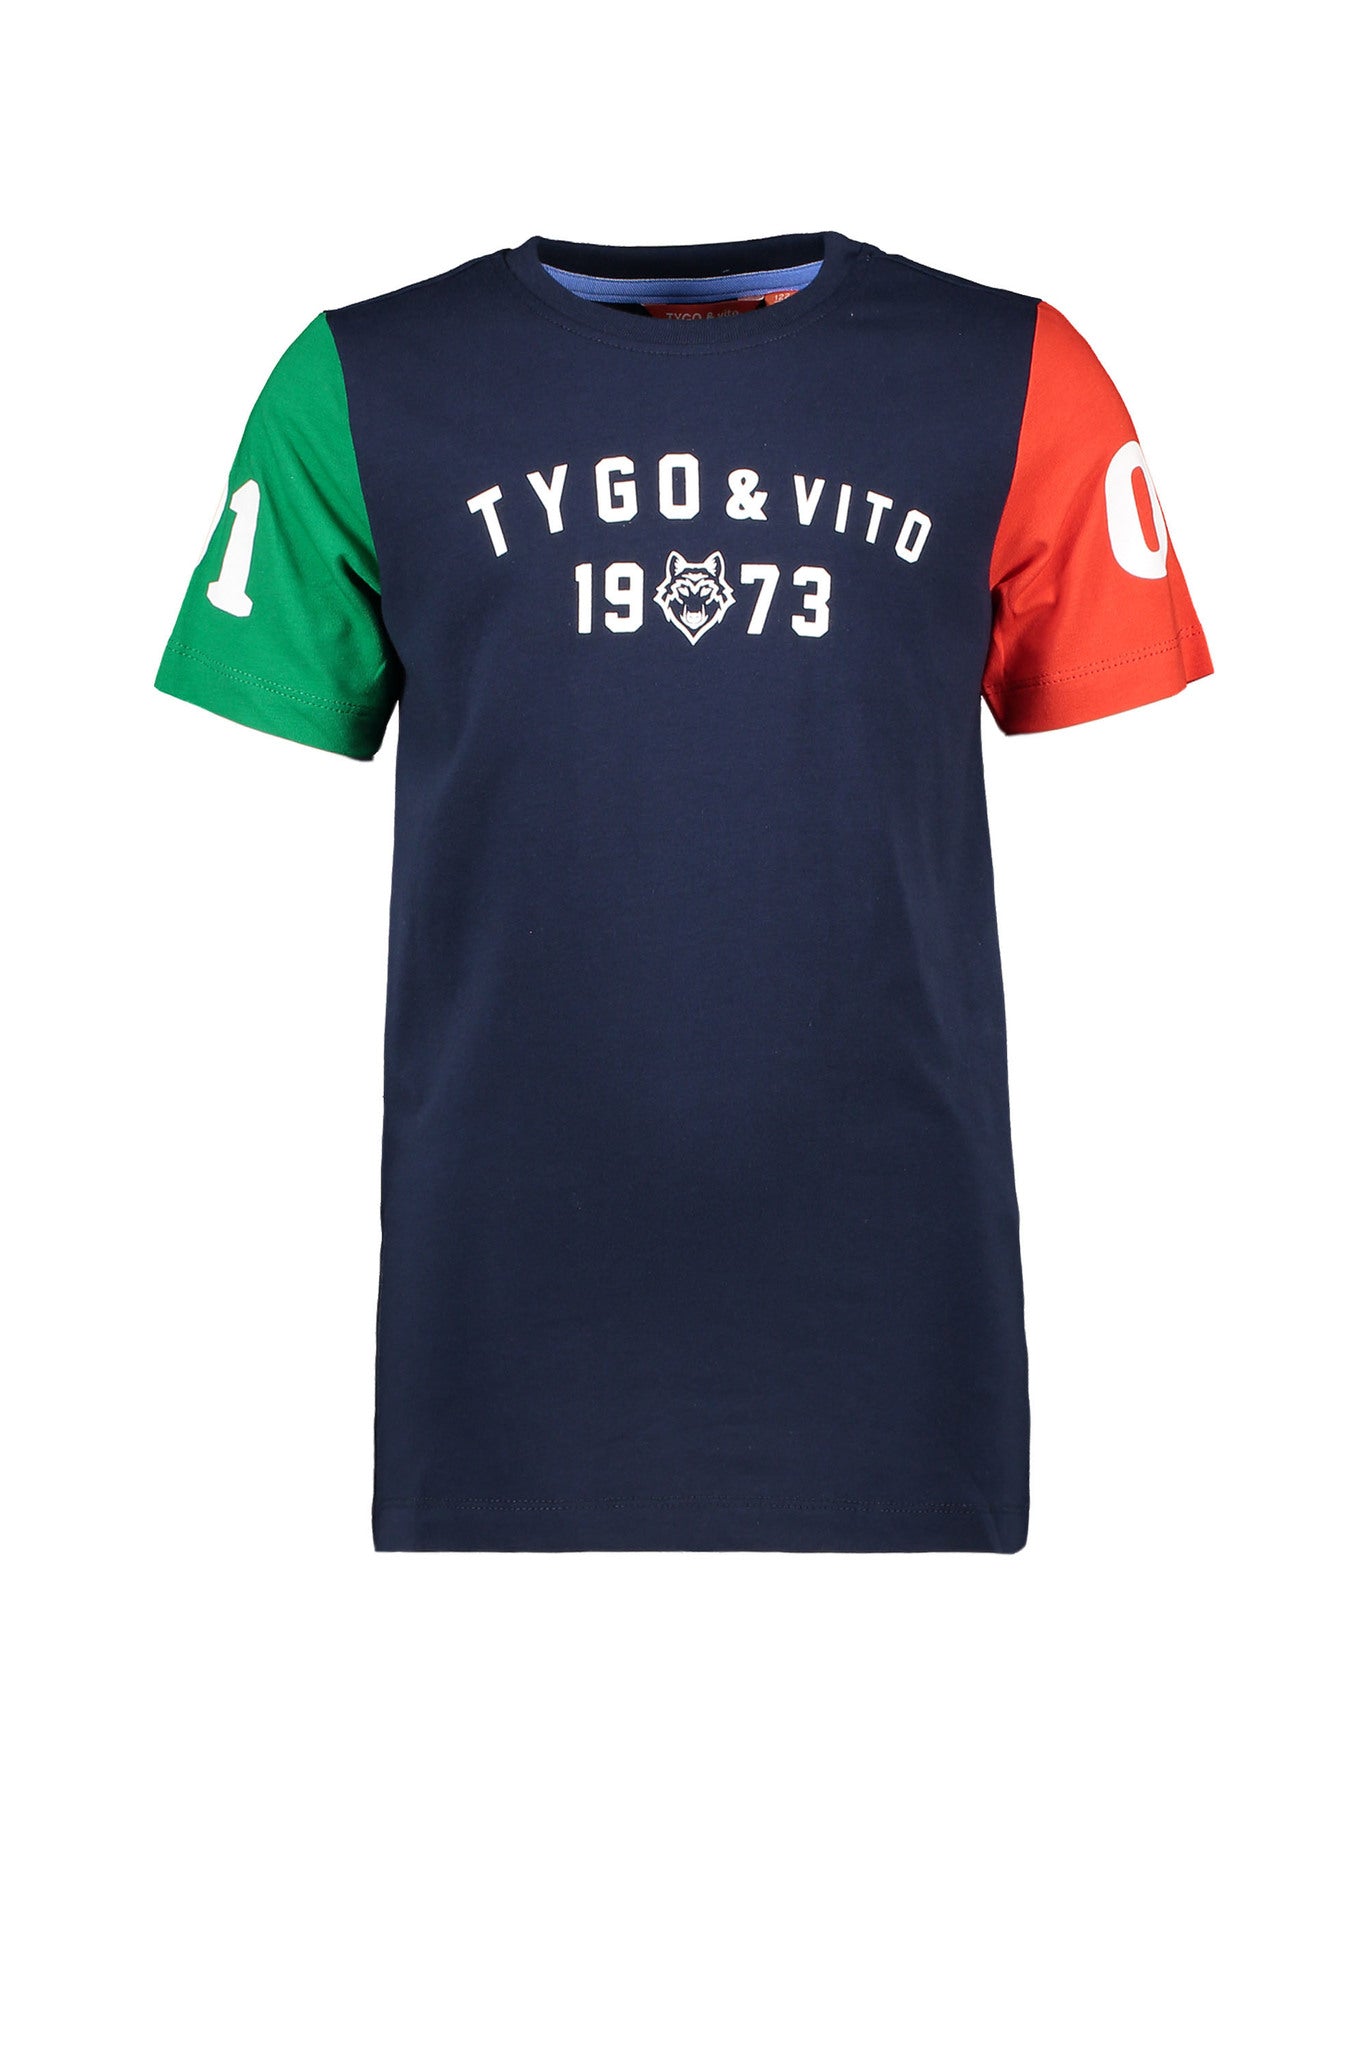 Tygo&Vito T-shirt contrast sleeves